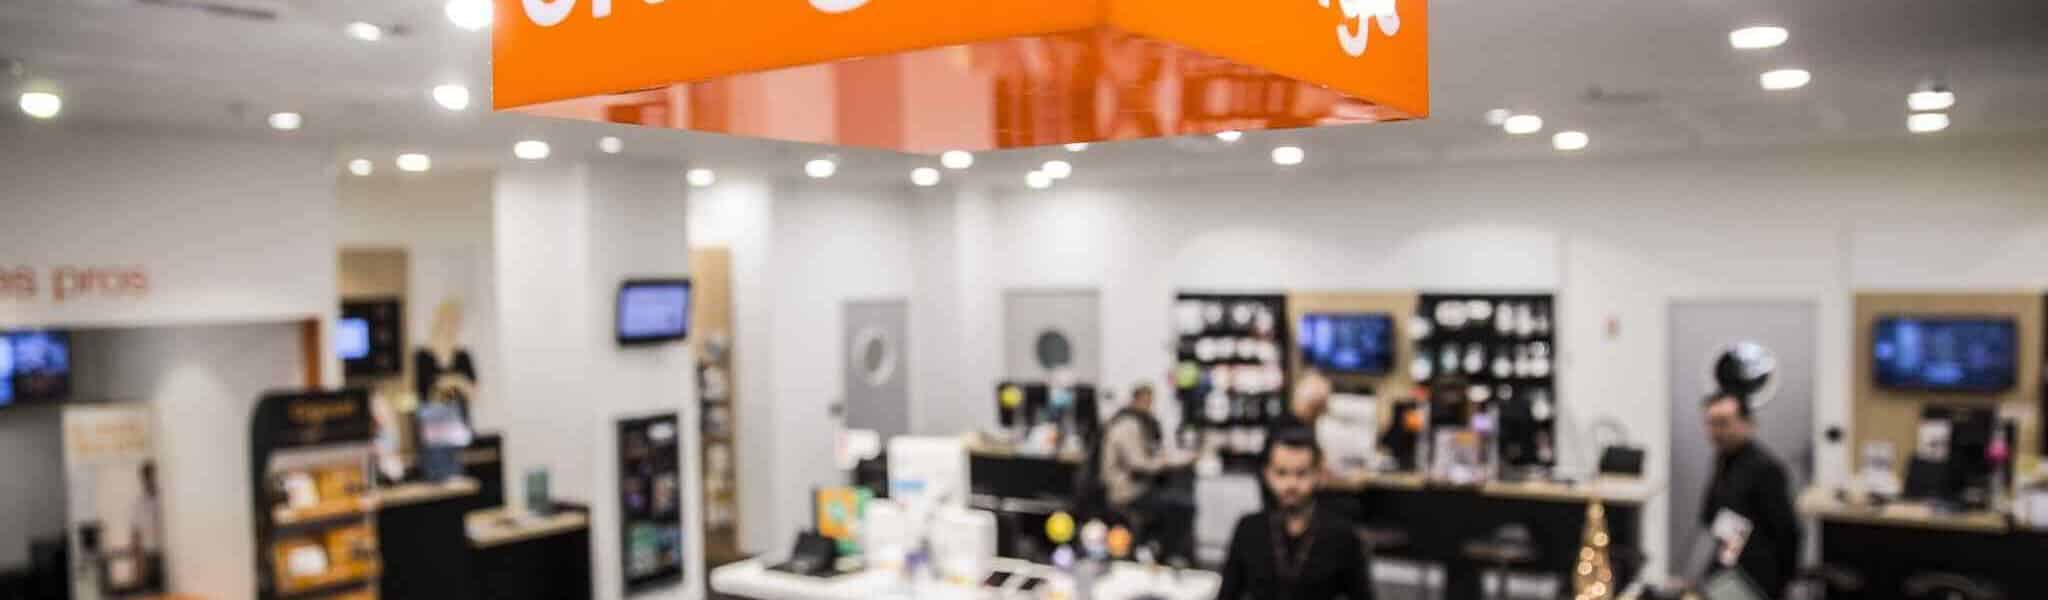 Orange Bank : des avancées sur son avenir ?